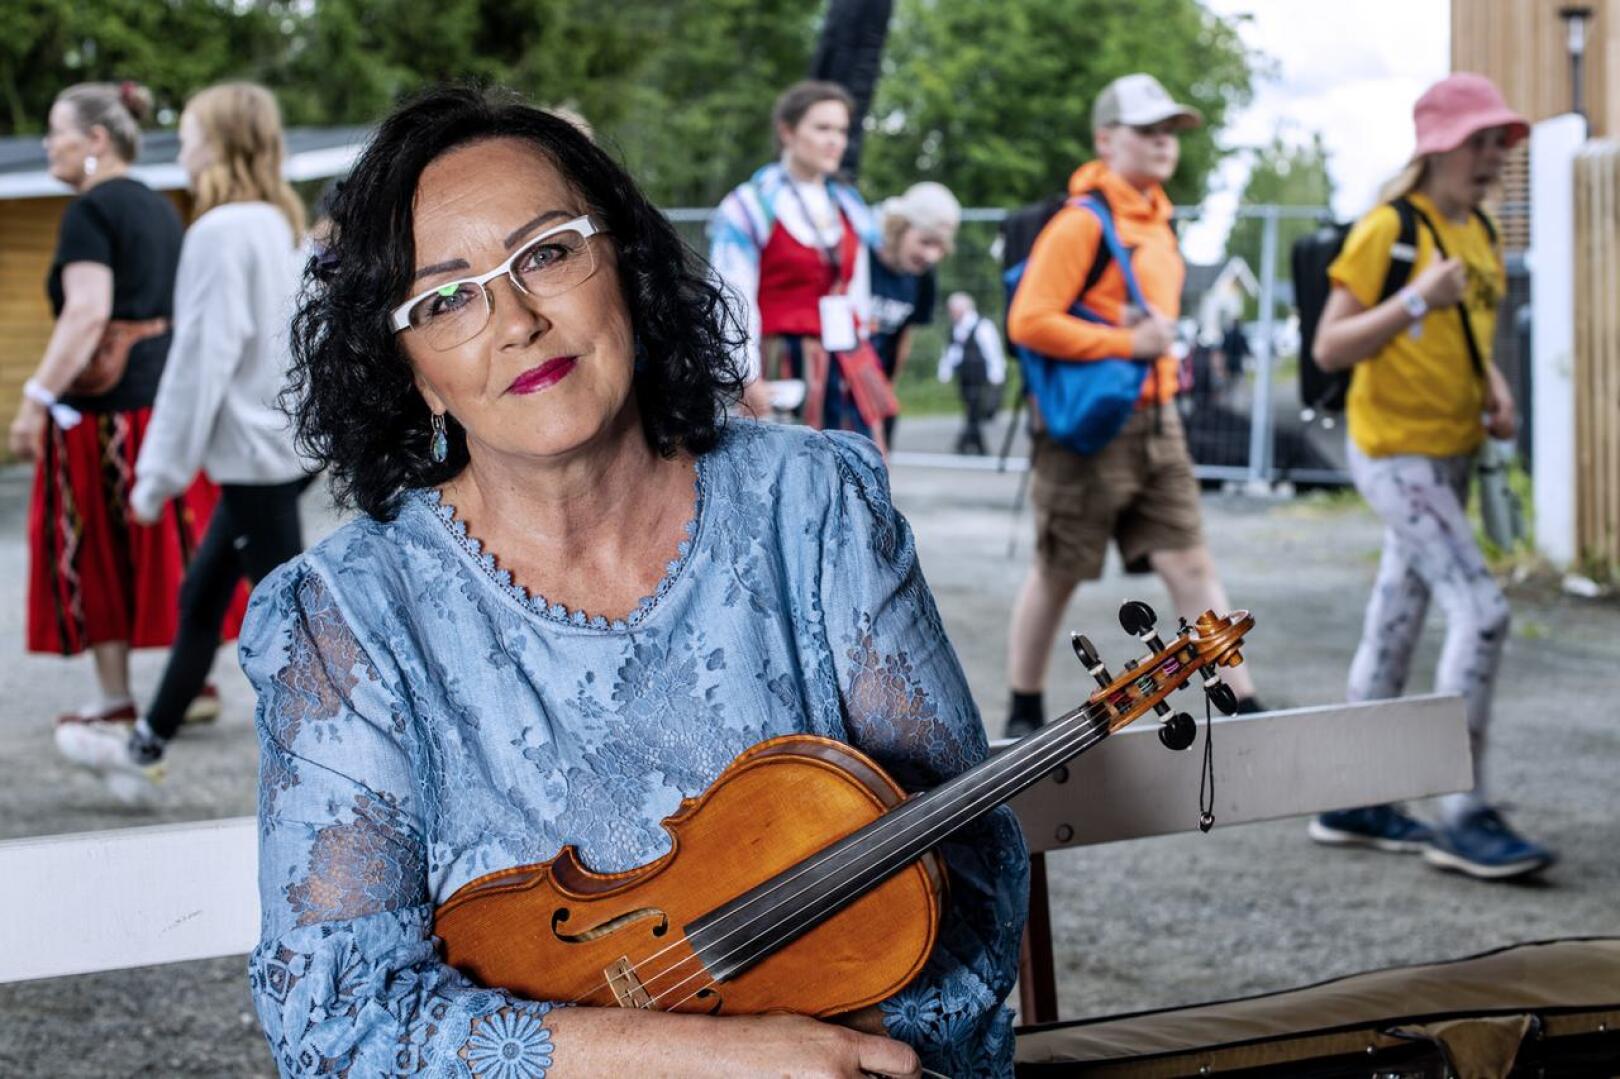 Mestaripelimanniksi nimetty Raila Järvelä on tehnyt elämäntyönsä viulunsoitonopettajana Keski-Pohjanmaan konservatoriossa.  